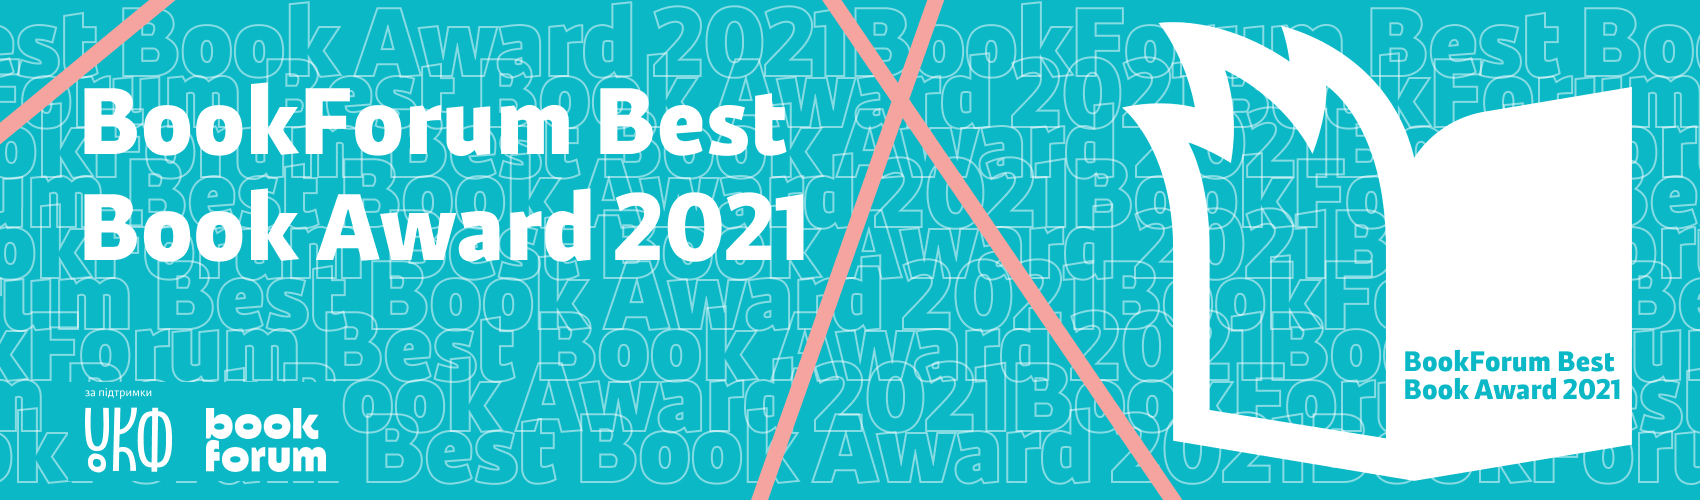 28 BookForum оголосив переможців Best Book Award 2021